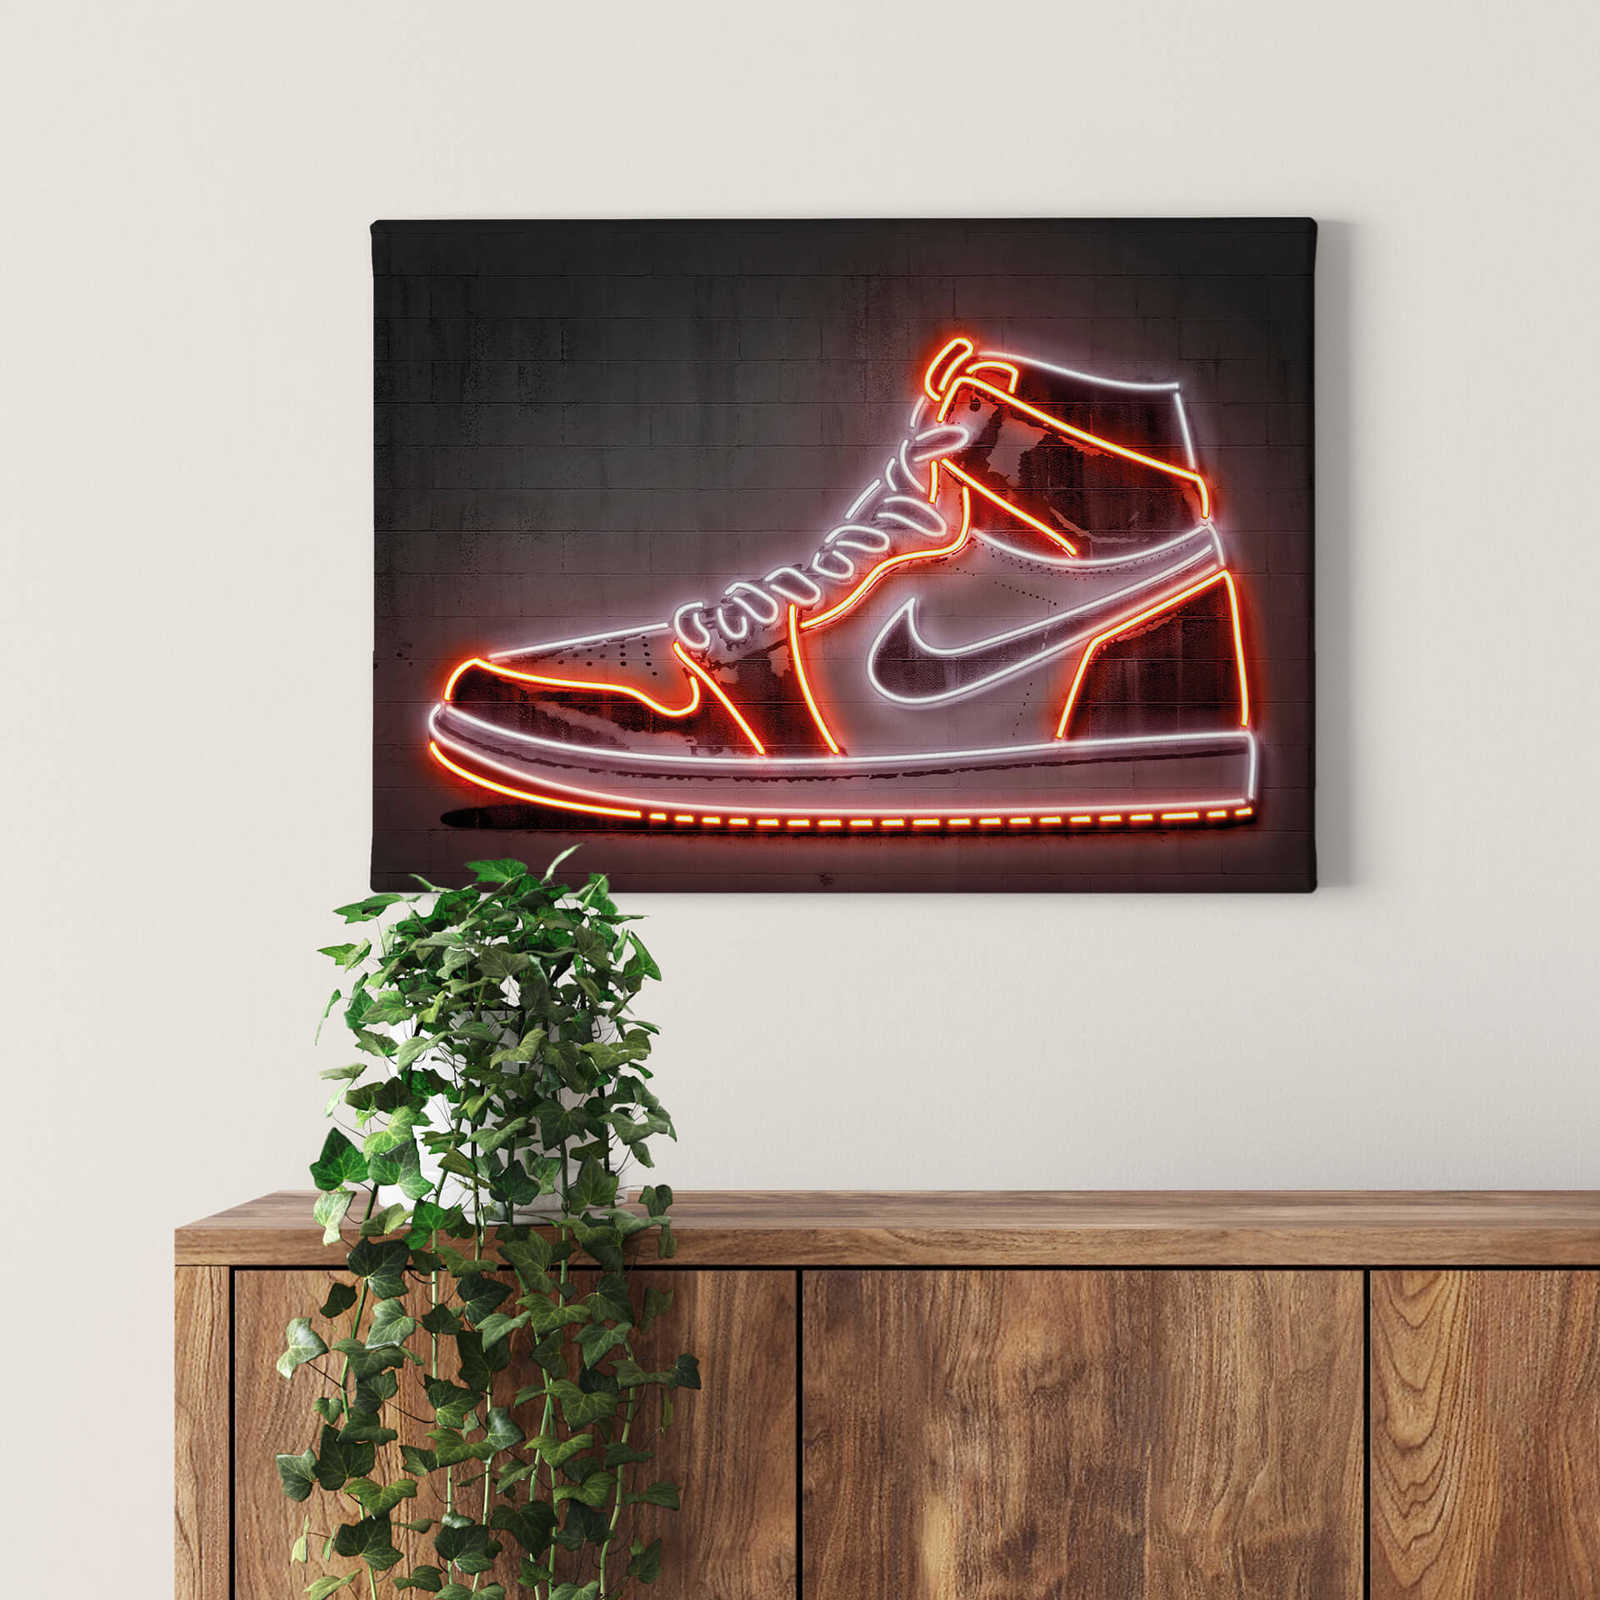 Air Jordan 3 Black Cement / Trainer / Sneaker Art Print / Poster | eBay